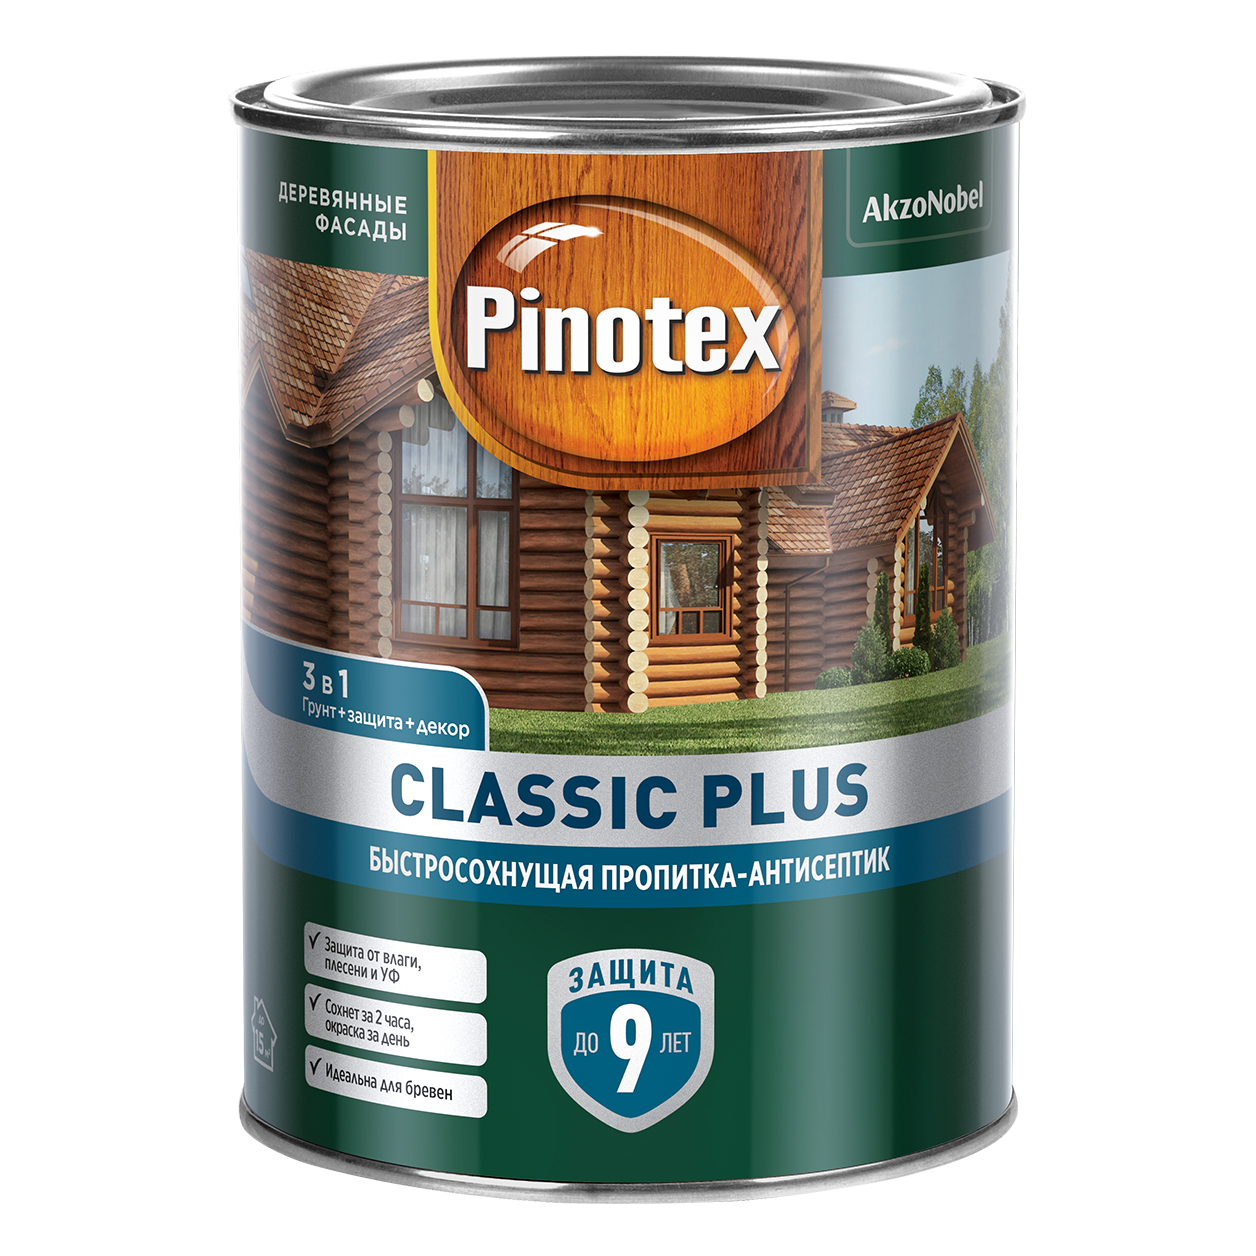 Pinotex Classic Plus.Быстросохнущая пропитка-антисептик на гибридной основе для защиты древесины